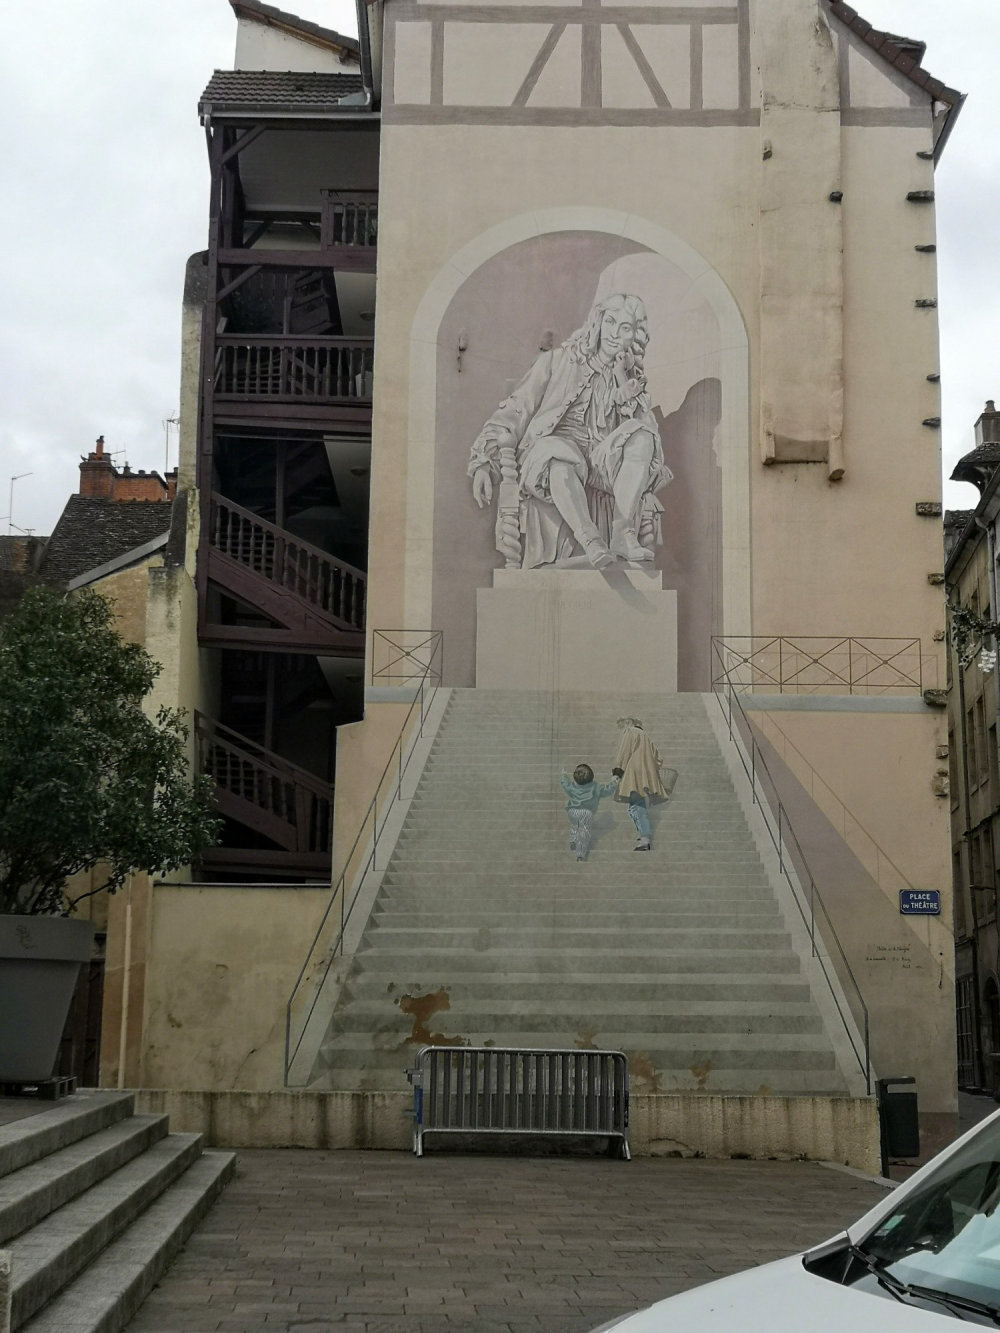 mural in Chalon-sur-Saône by artist unknown.